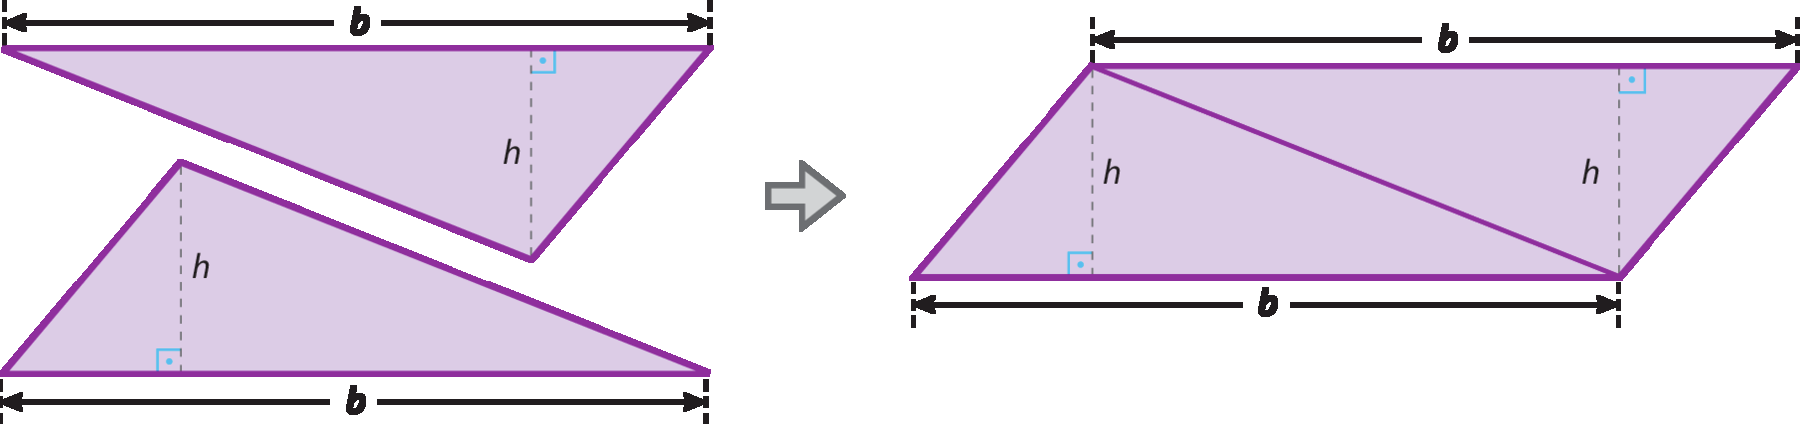 Ilustração. Triângulo lilás com altura h e base b. Abaixo, triângulo com altura h e base b. Seta para direita. Dois triângulos com altura h cada um formando um retângulo no centro. À esquerda e direita, triângulo. A junção dos dois triângulos resulta em um paralelogramo com base medindo b e altura medindo h